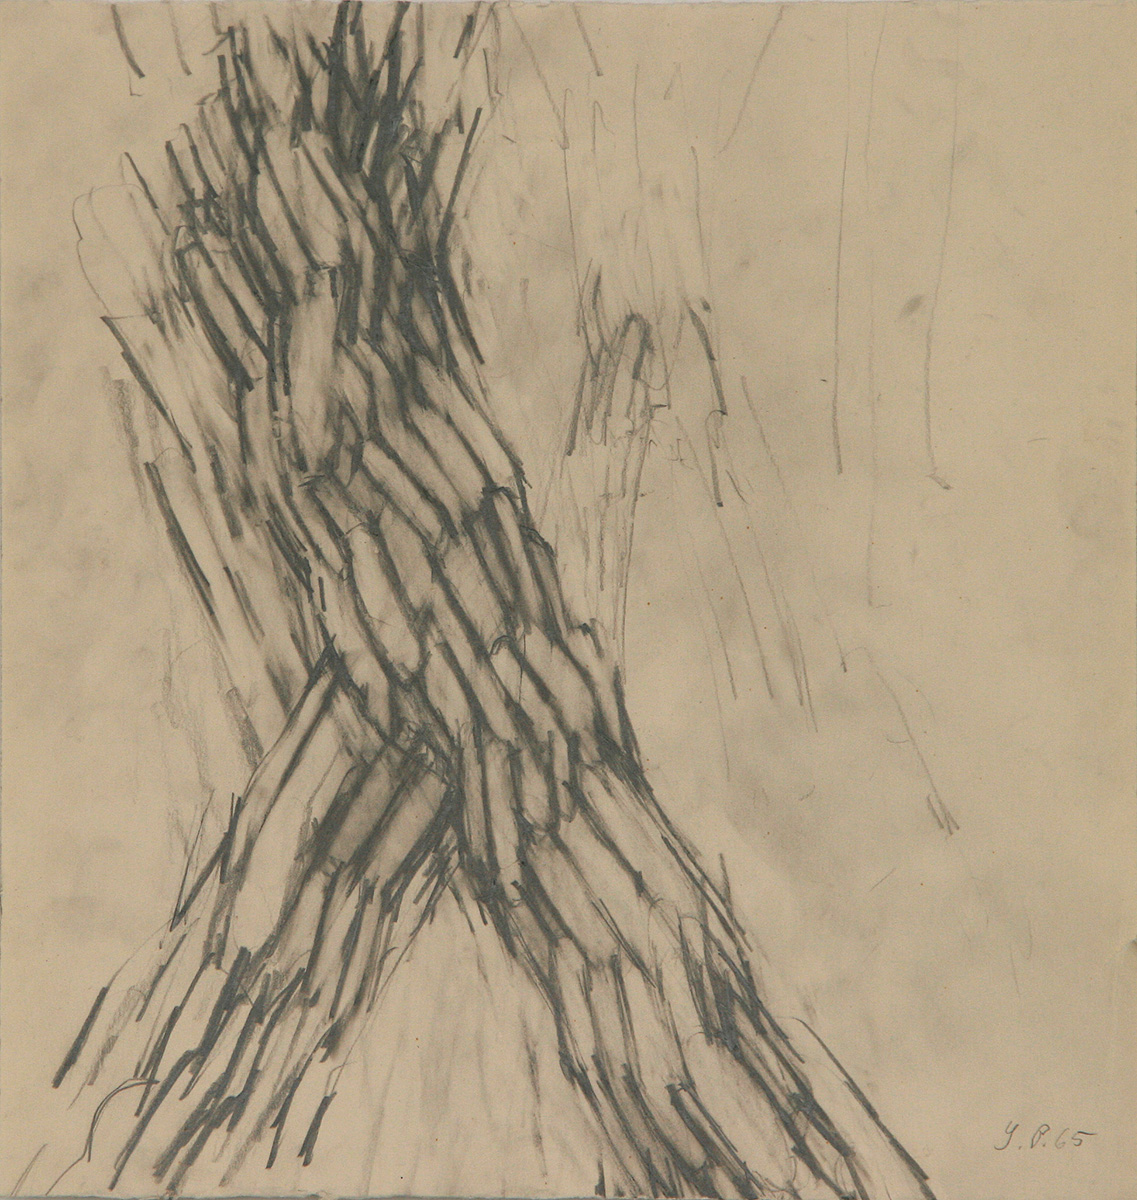 Schreitender Torso, 196531,5 x 30 cmBleistift auf Papier